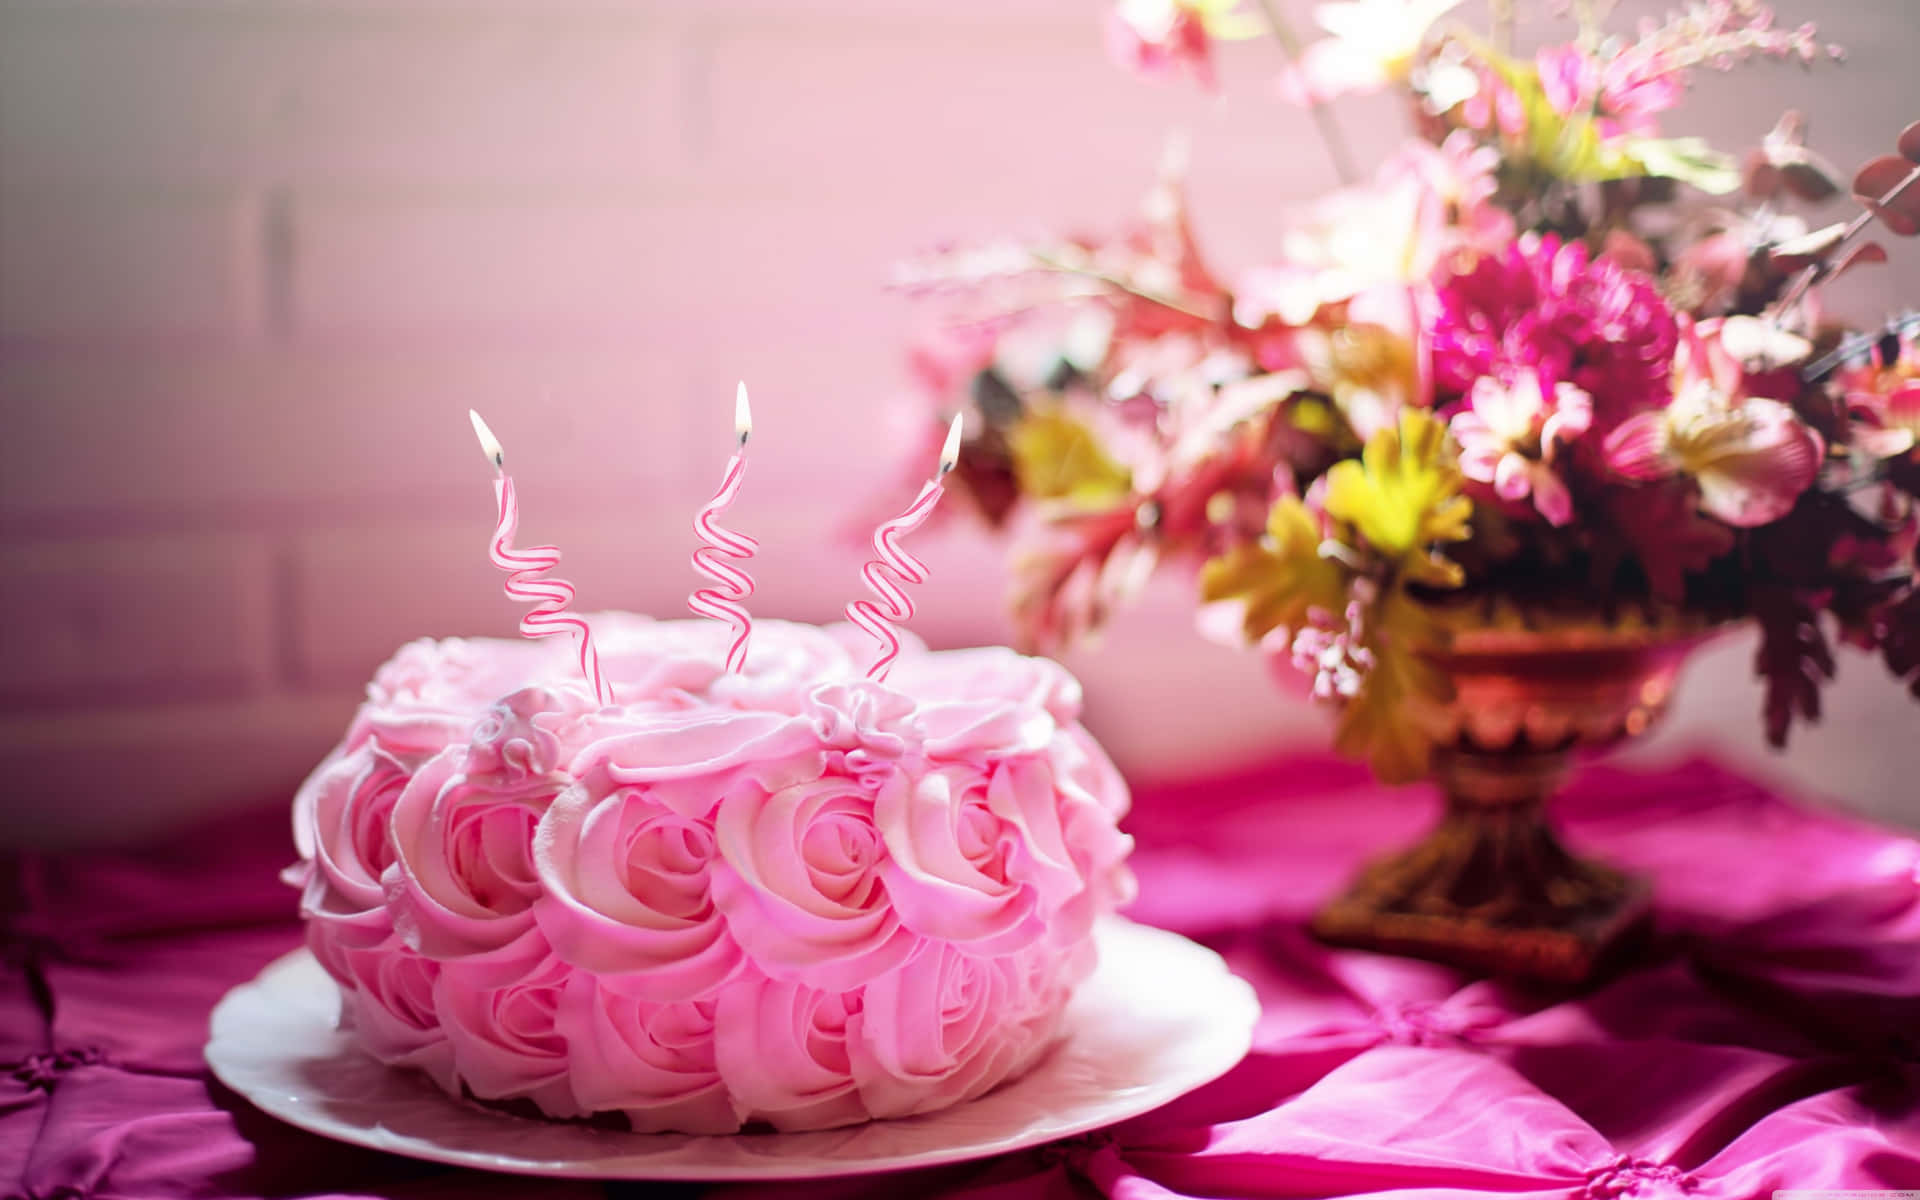 Mini Birthday Cake Near Vase Background